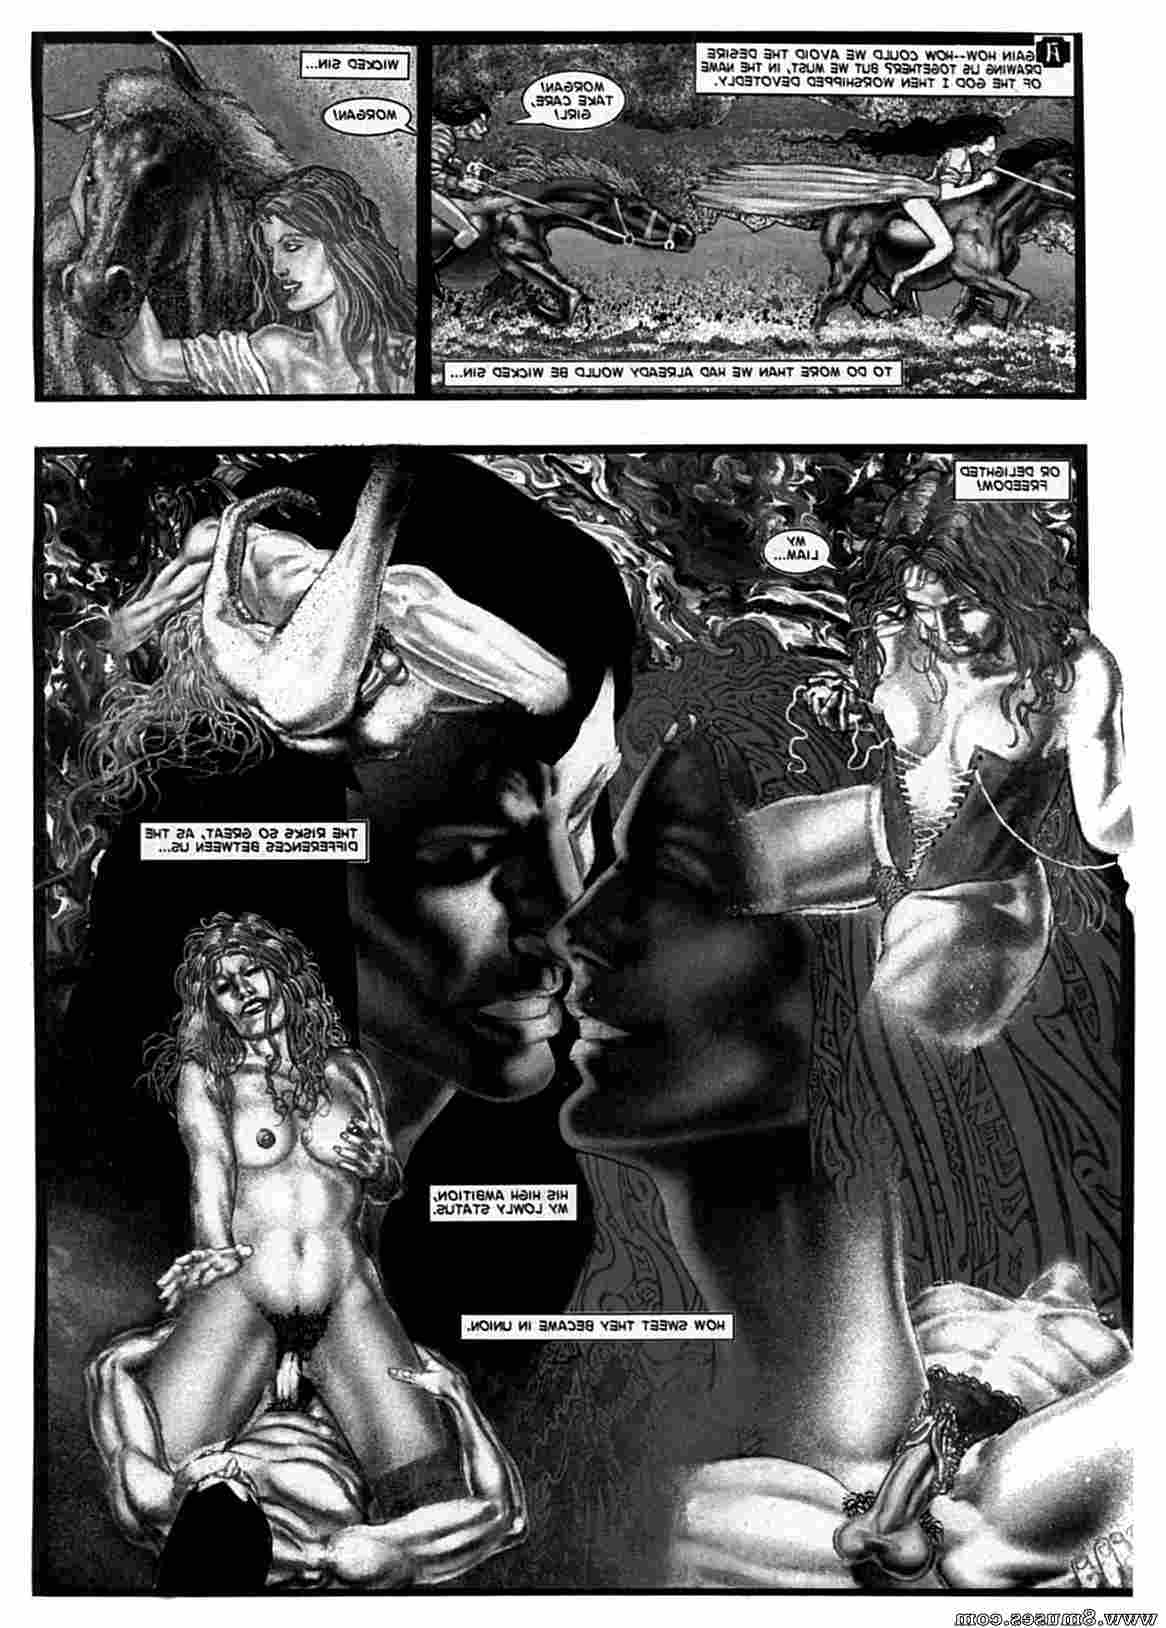 Amerotica-Comics/A-Night-In-A-Moorish-Harem/A-Night-In-A-Moorish-Harem-2 A_Night_In_A_Moorish_Harem_2__8muses_-_Sex_and_Porn_Comics_46.jpg